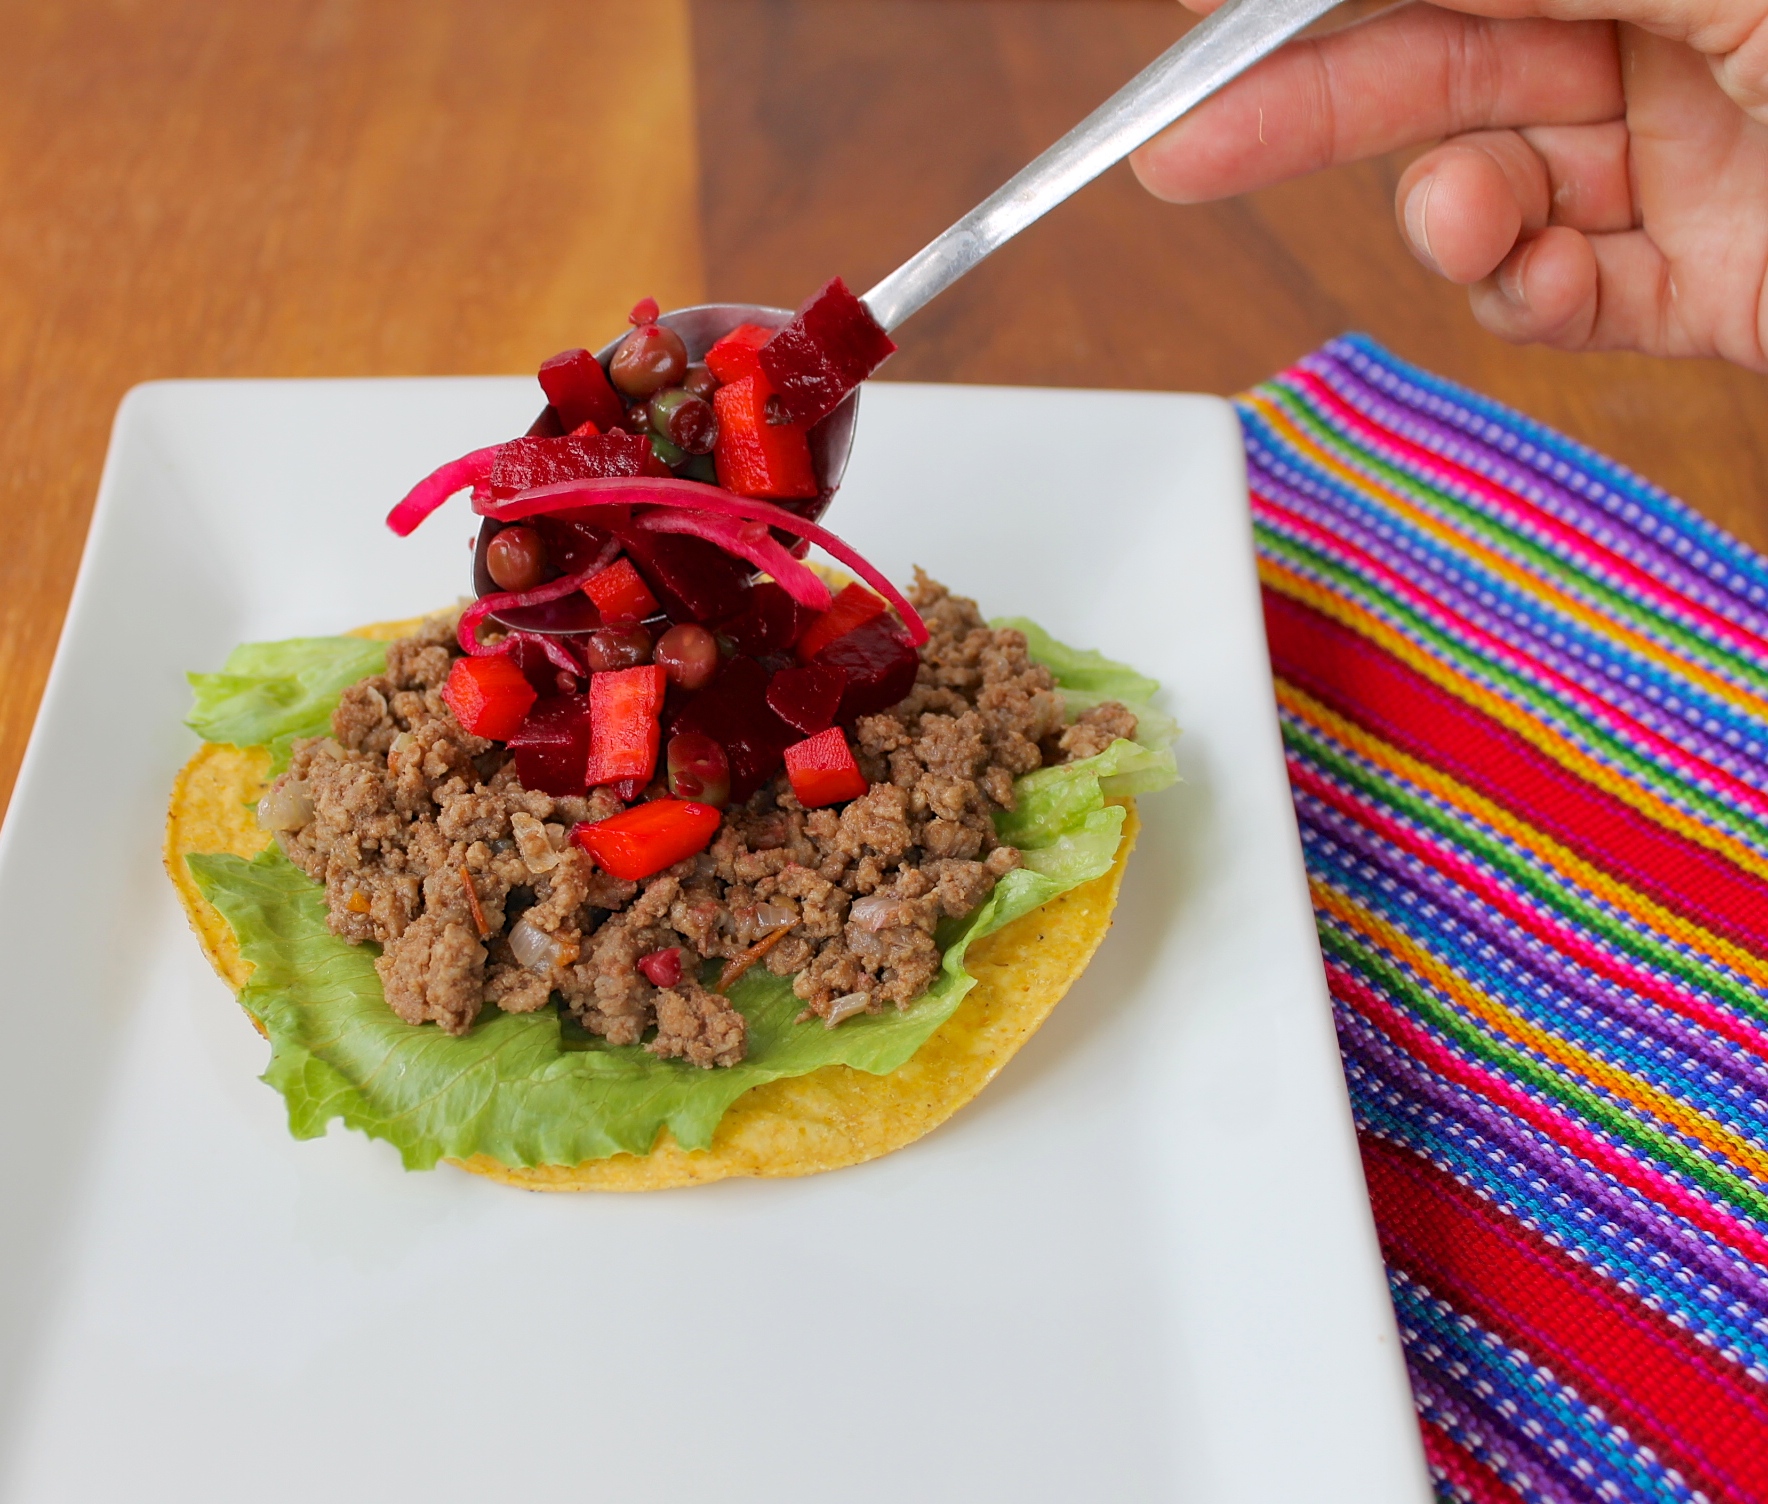 guatemalan enchiladas ingredients and preparation